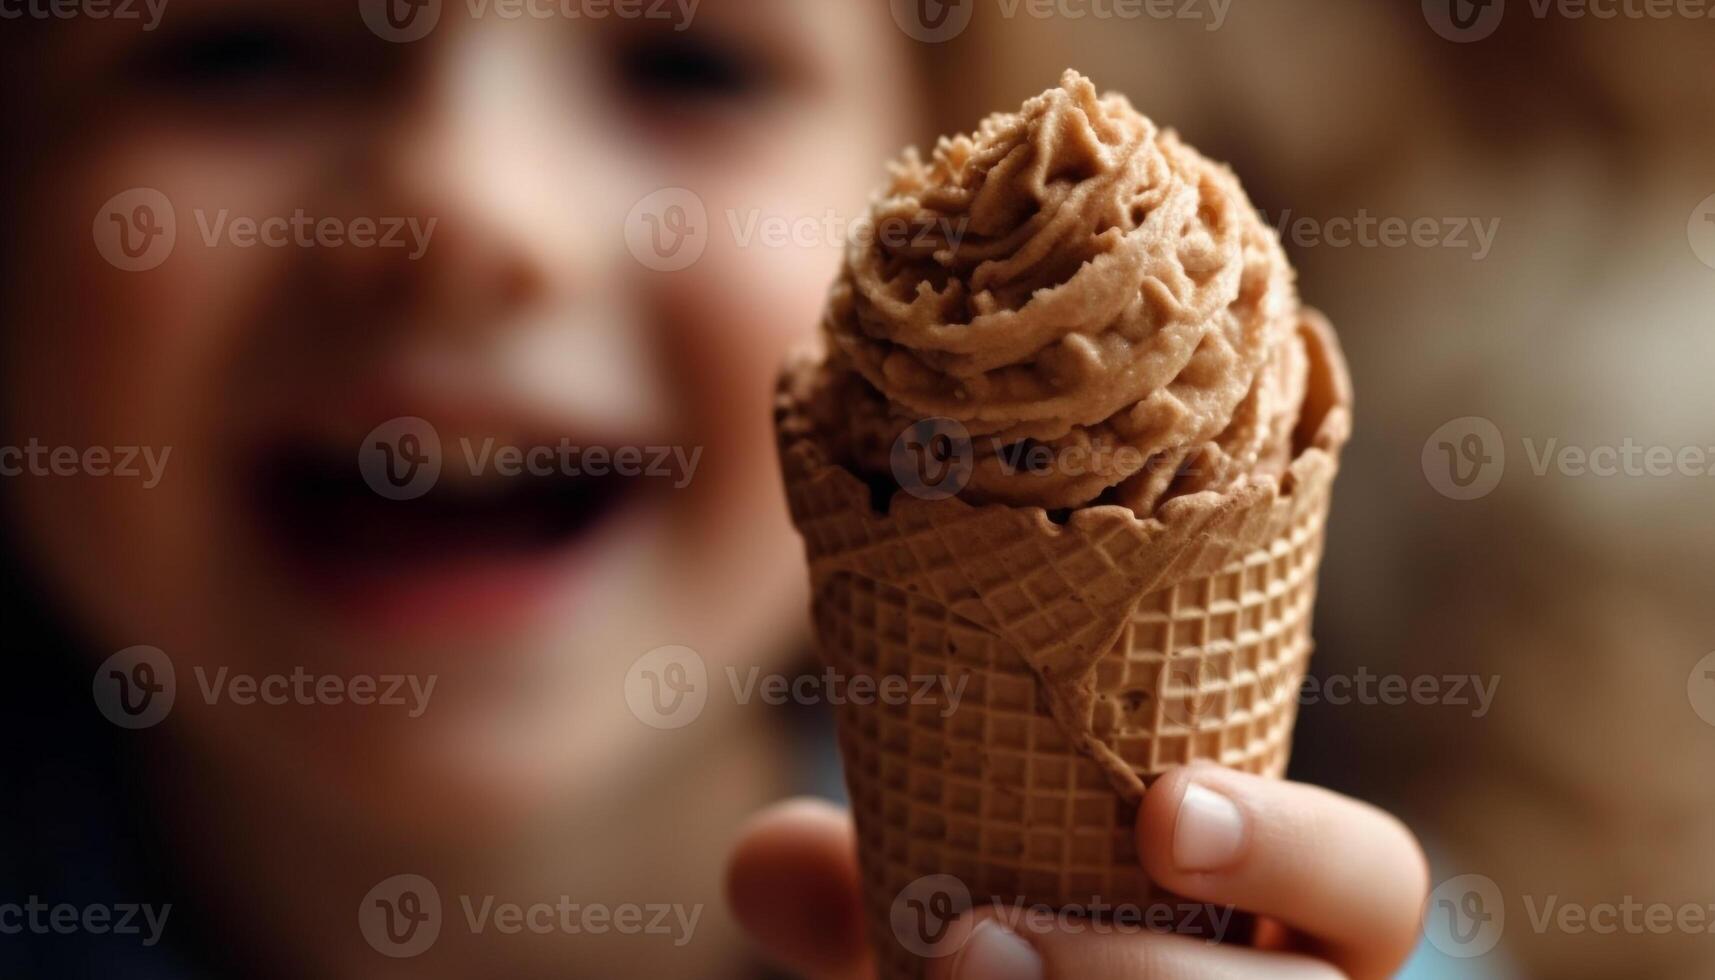 Cute child holding ice cream cone, enjoying sweet indulgence indoors generated by AI photo